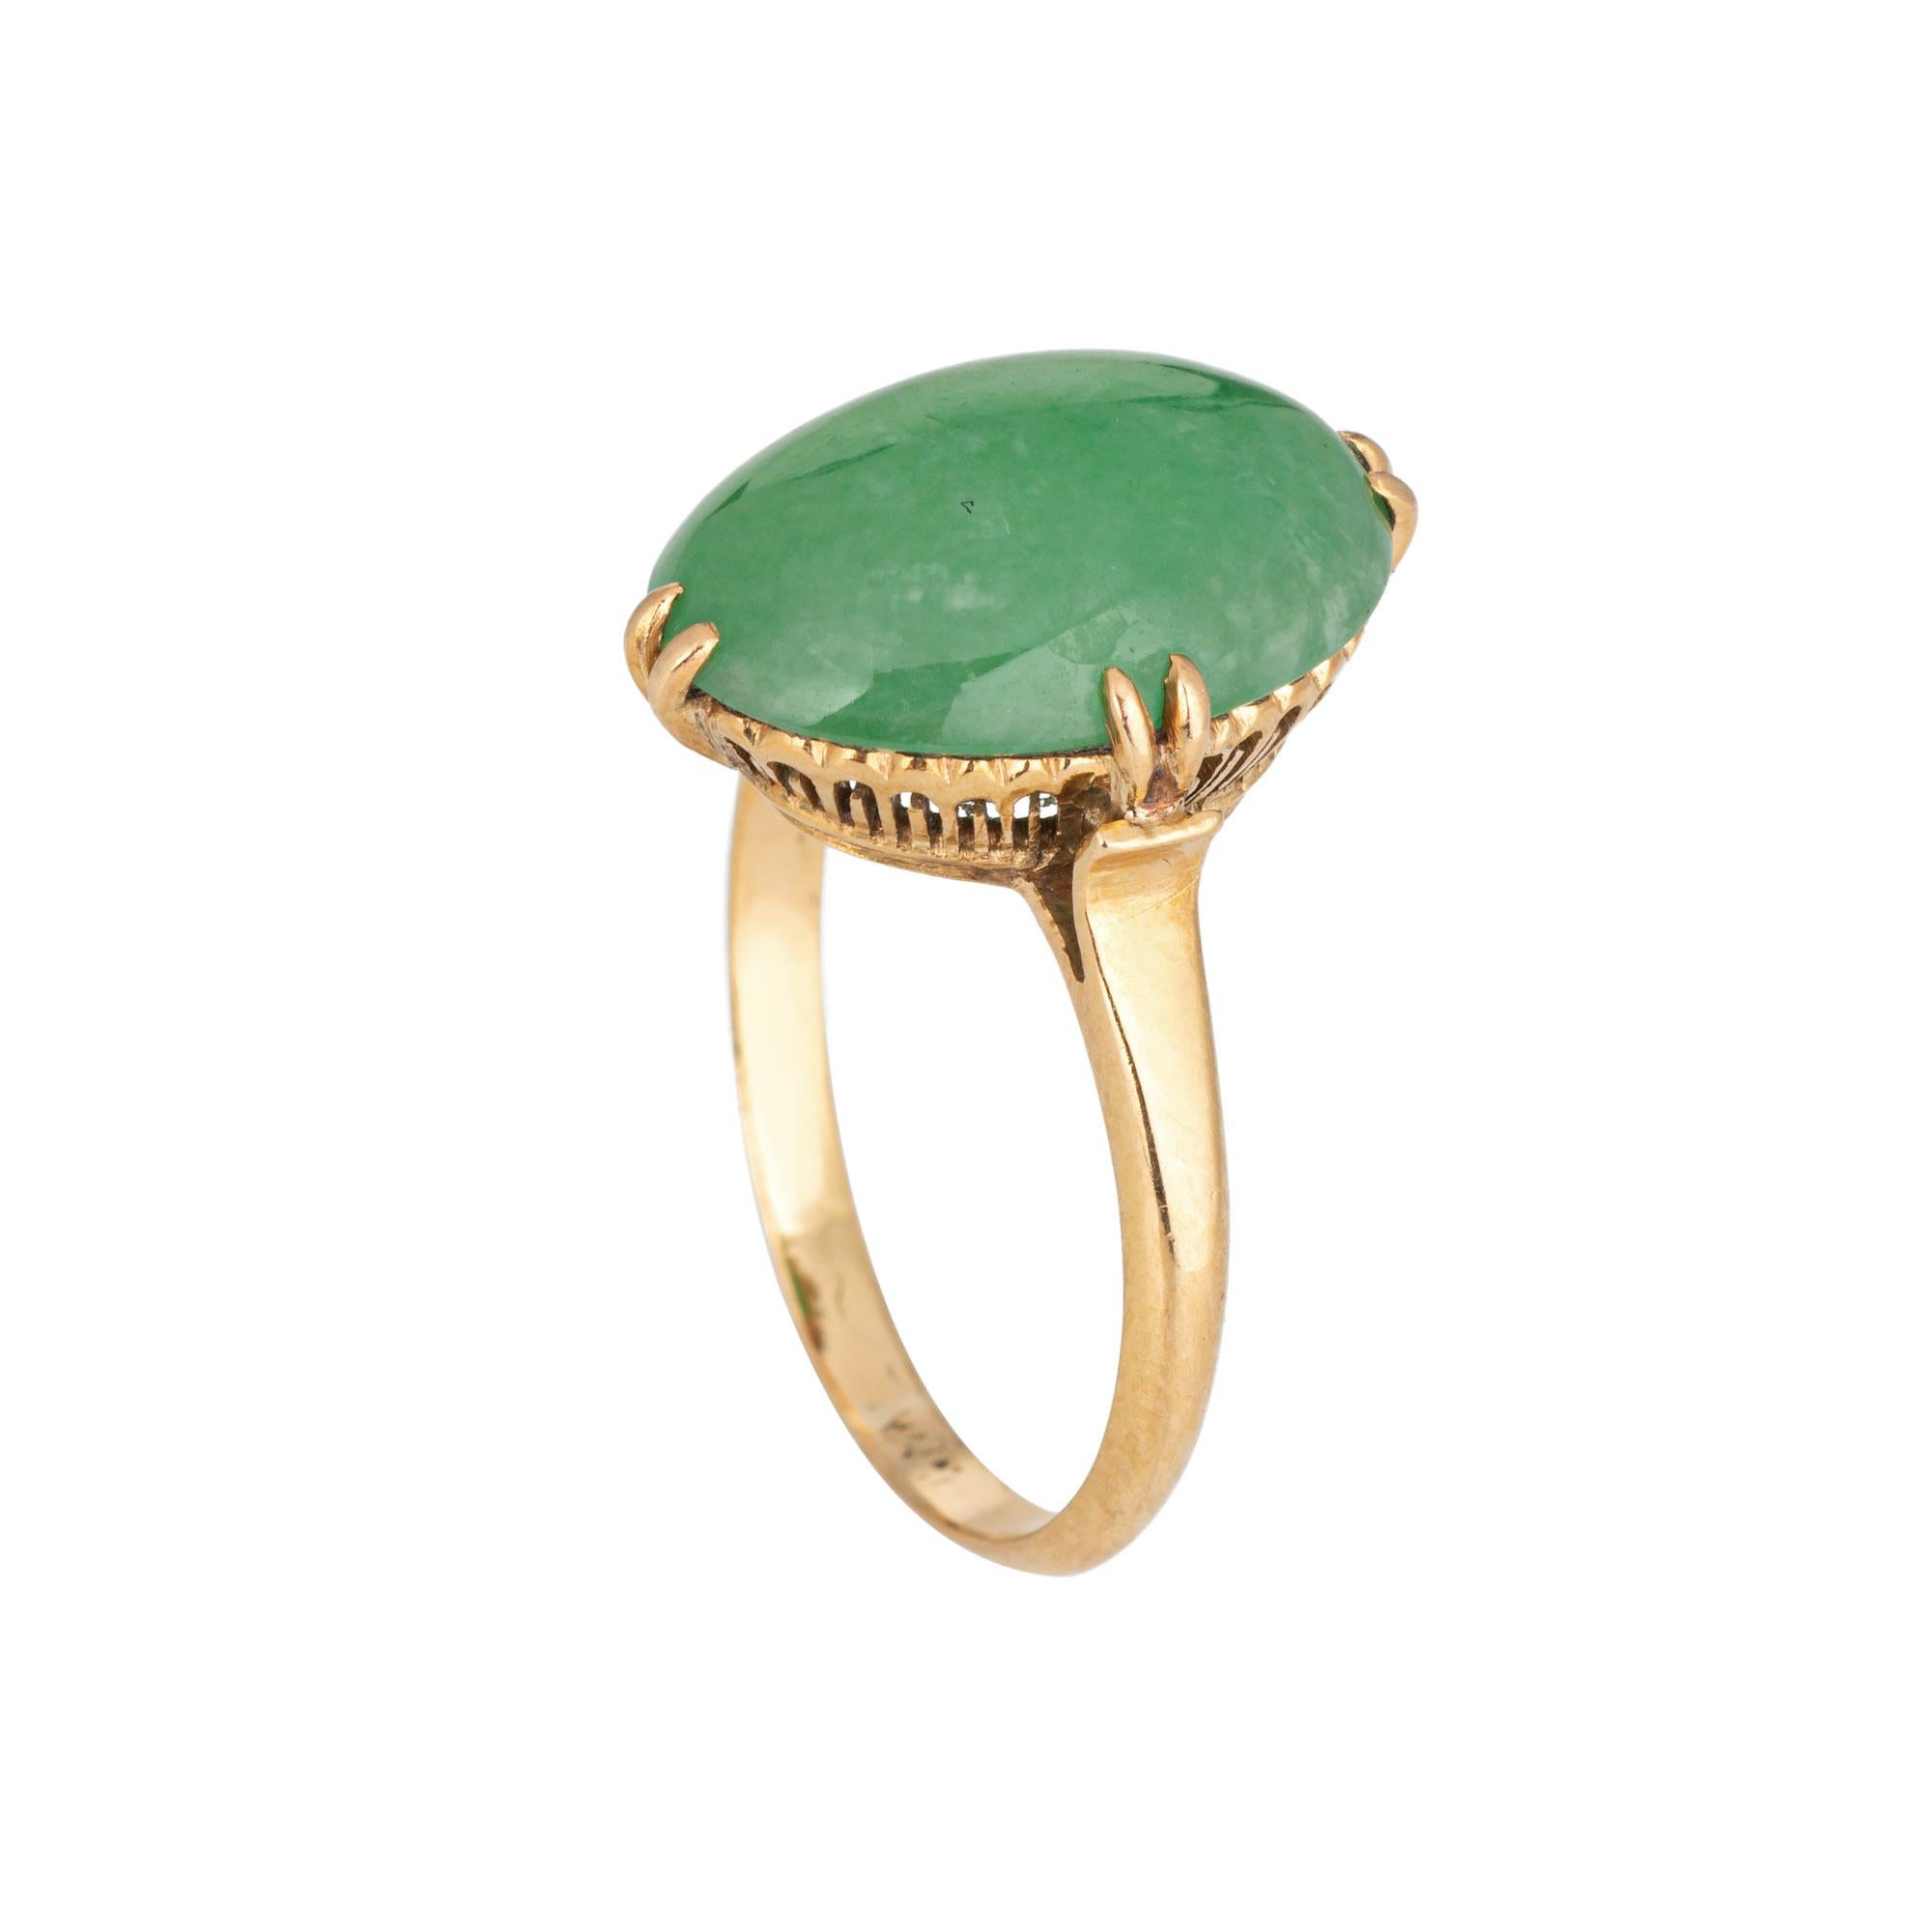 Élégante bague vintage en jade (circa 1950-1960) réalisée en or jaune 14 carats. 

Le jade mesure 14 mm x 9,5 mm. Le jade est en bon état et ne présente ni fissures ni éclats. 

La monture ovale met en valeur un magnifique jade vert. Mesurant un peu